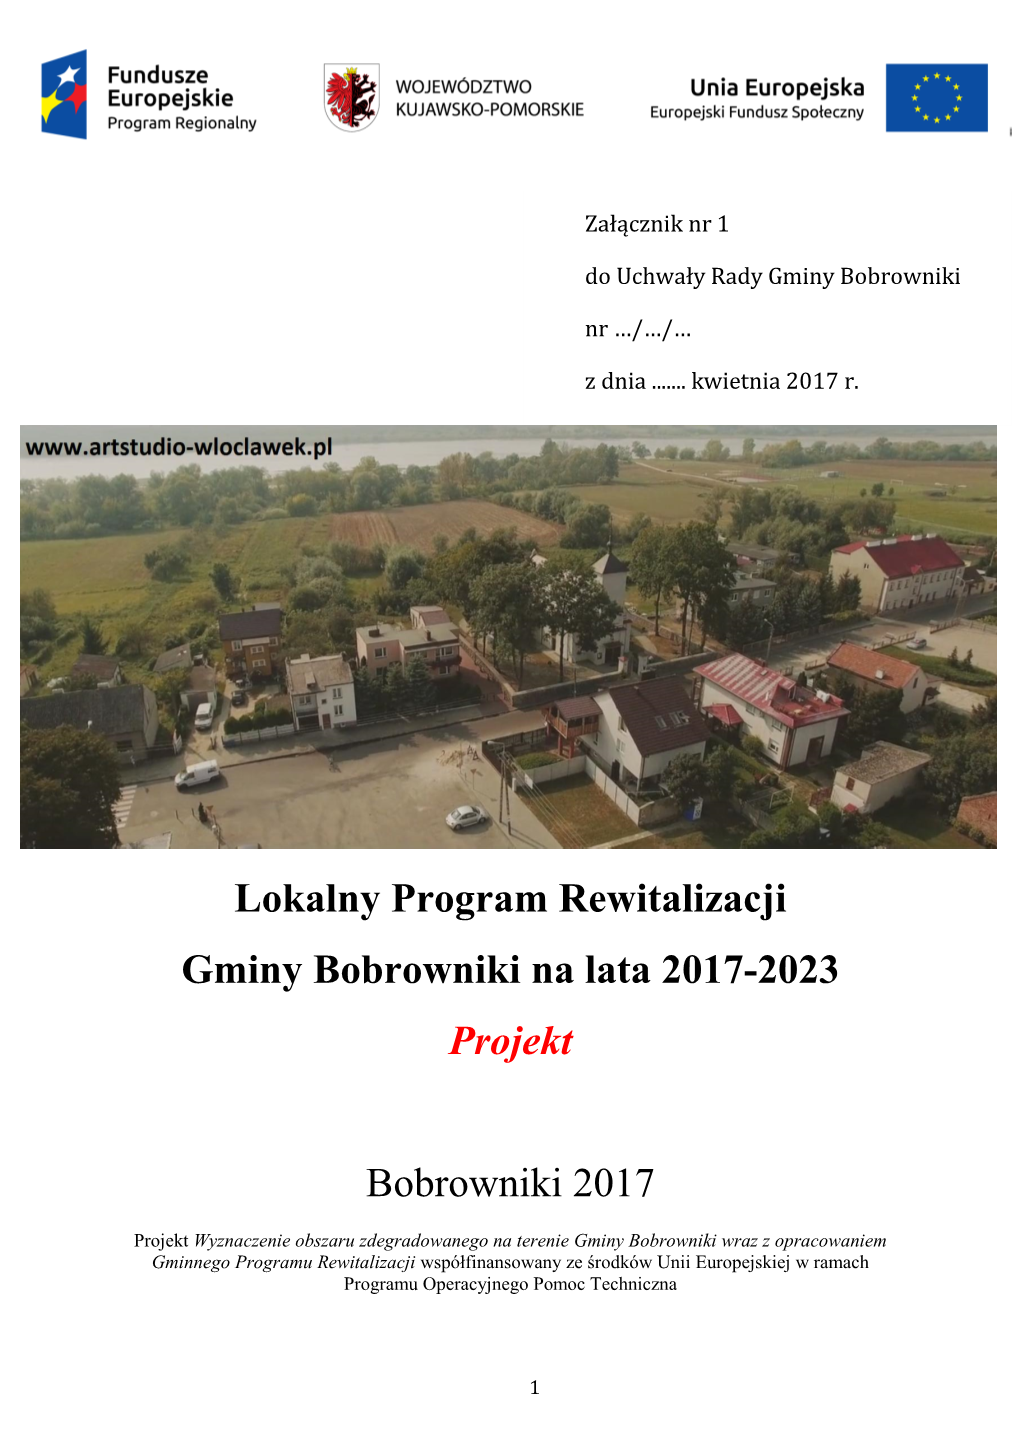 Lokalny Program Rewitalizacji Gminy Bobrowniki Na Lata 2017-2023 Projekt